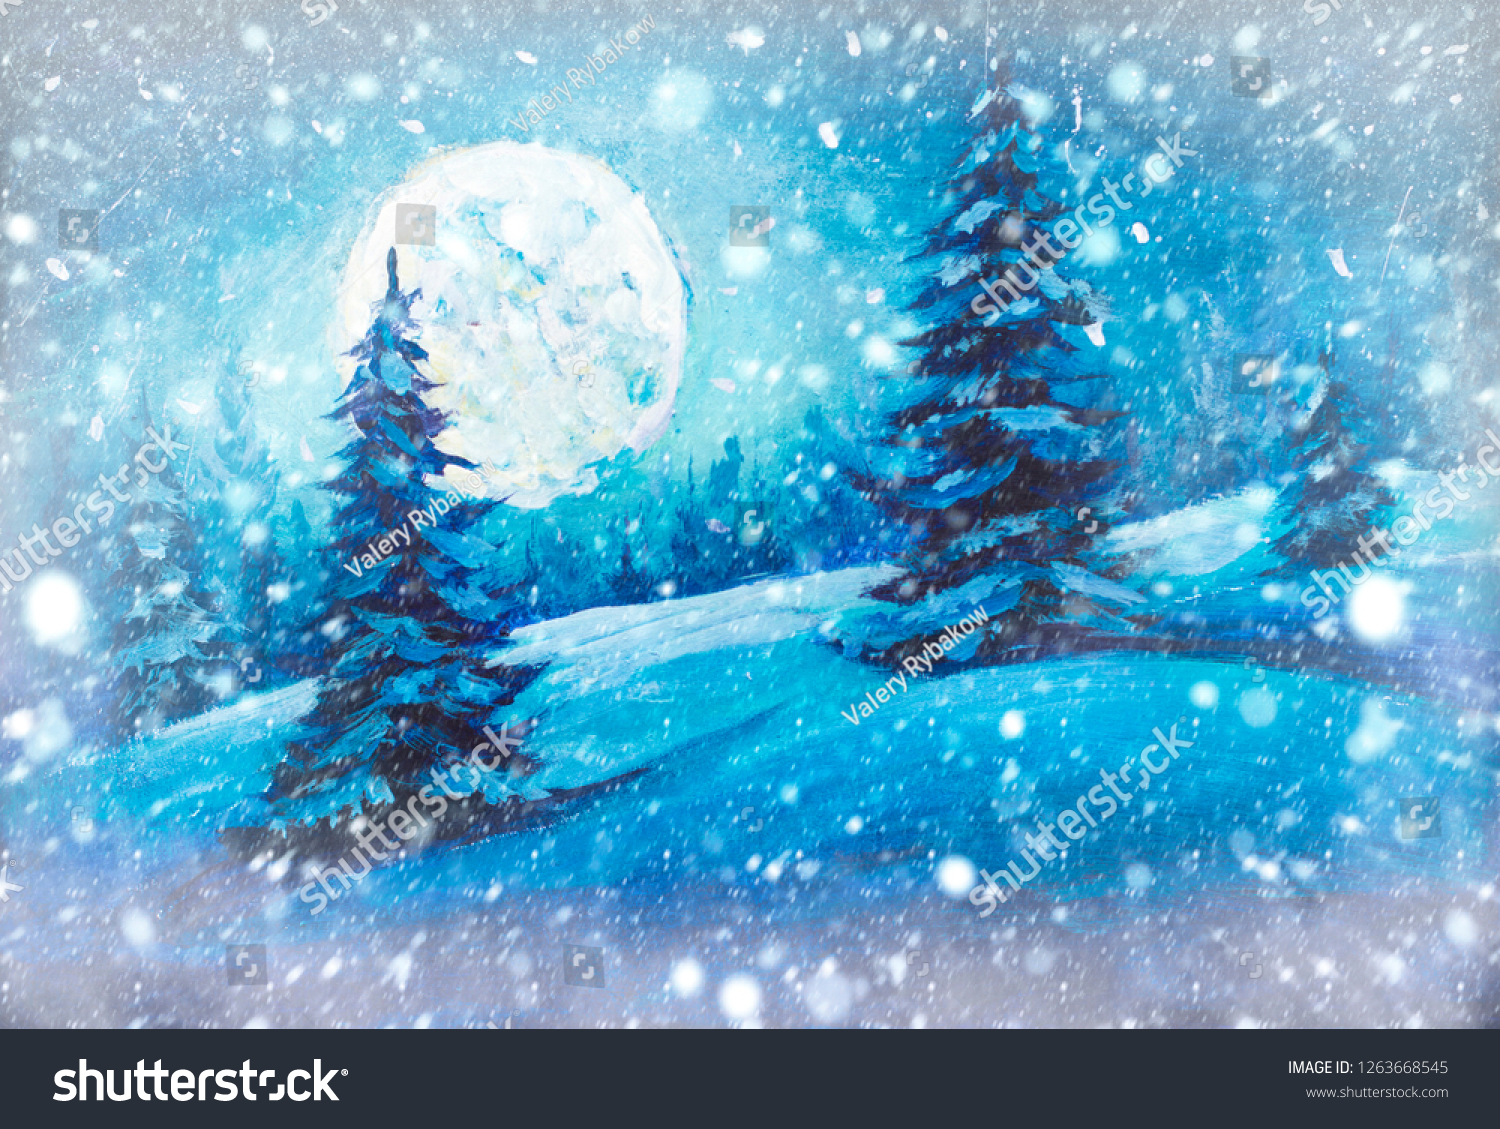 Original Oil painting of pine tree silhouette moon night sky